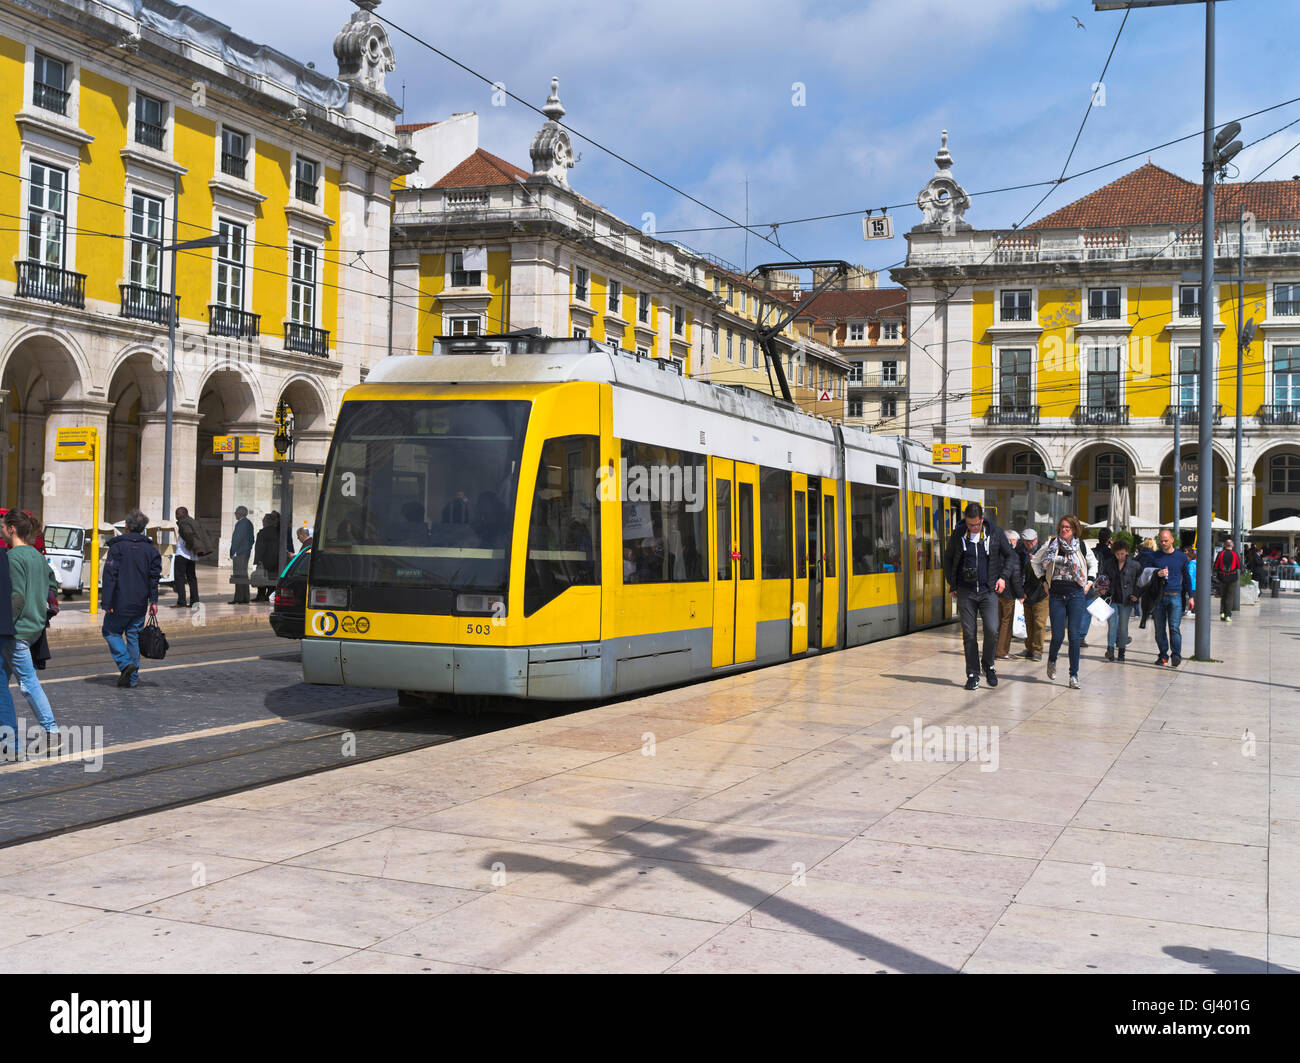 dh Straßenbahn LISSABON PORTUGAL Siemens elektrische Straßenbahn Stadtzentrum Platz praca do comercio in gelben lisboa Straßenbahnen Stockfoto